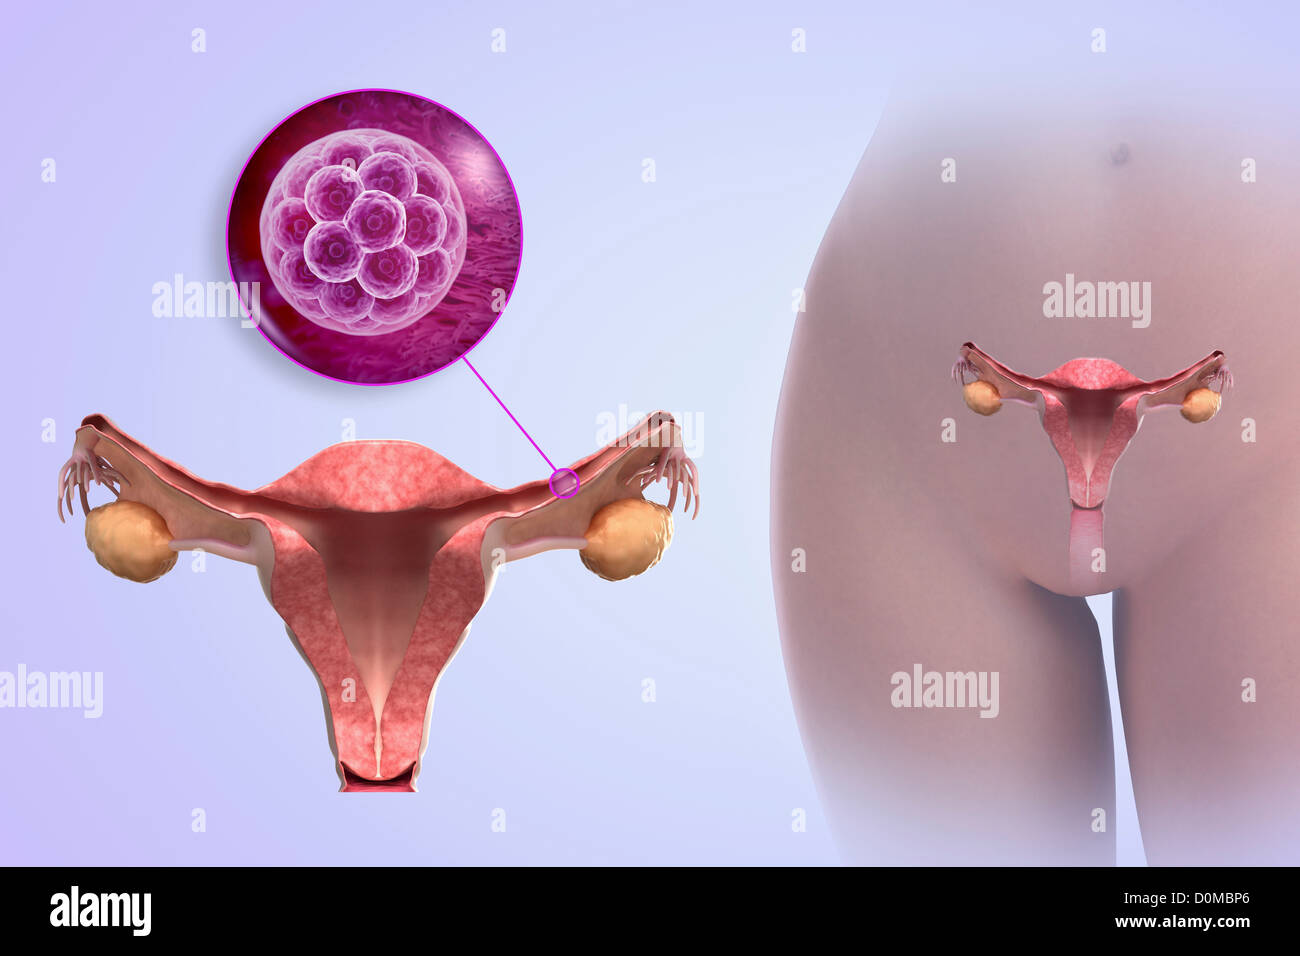 Un modèle humain montrant la grossesse entre 4 à 6 jours. Banque D'Images